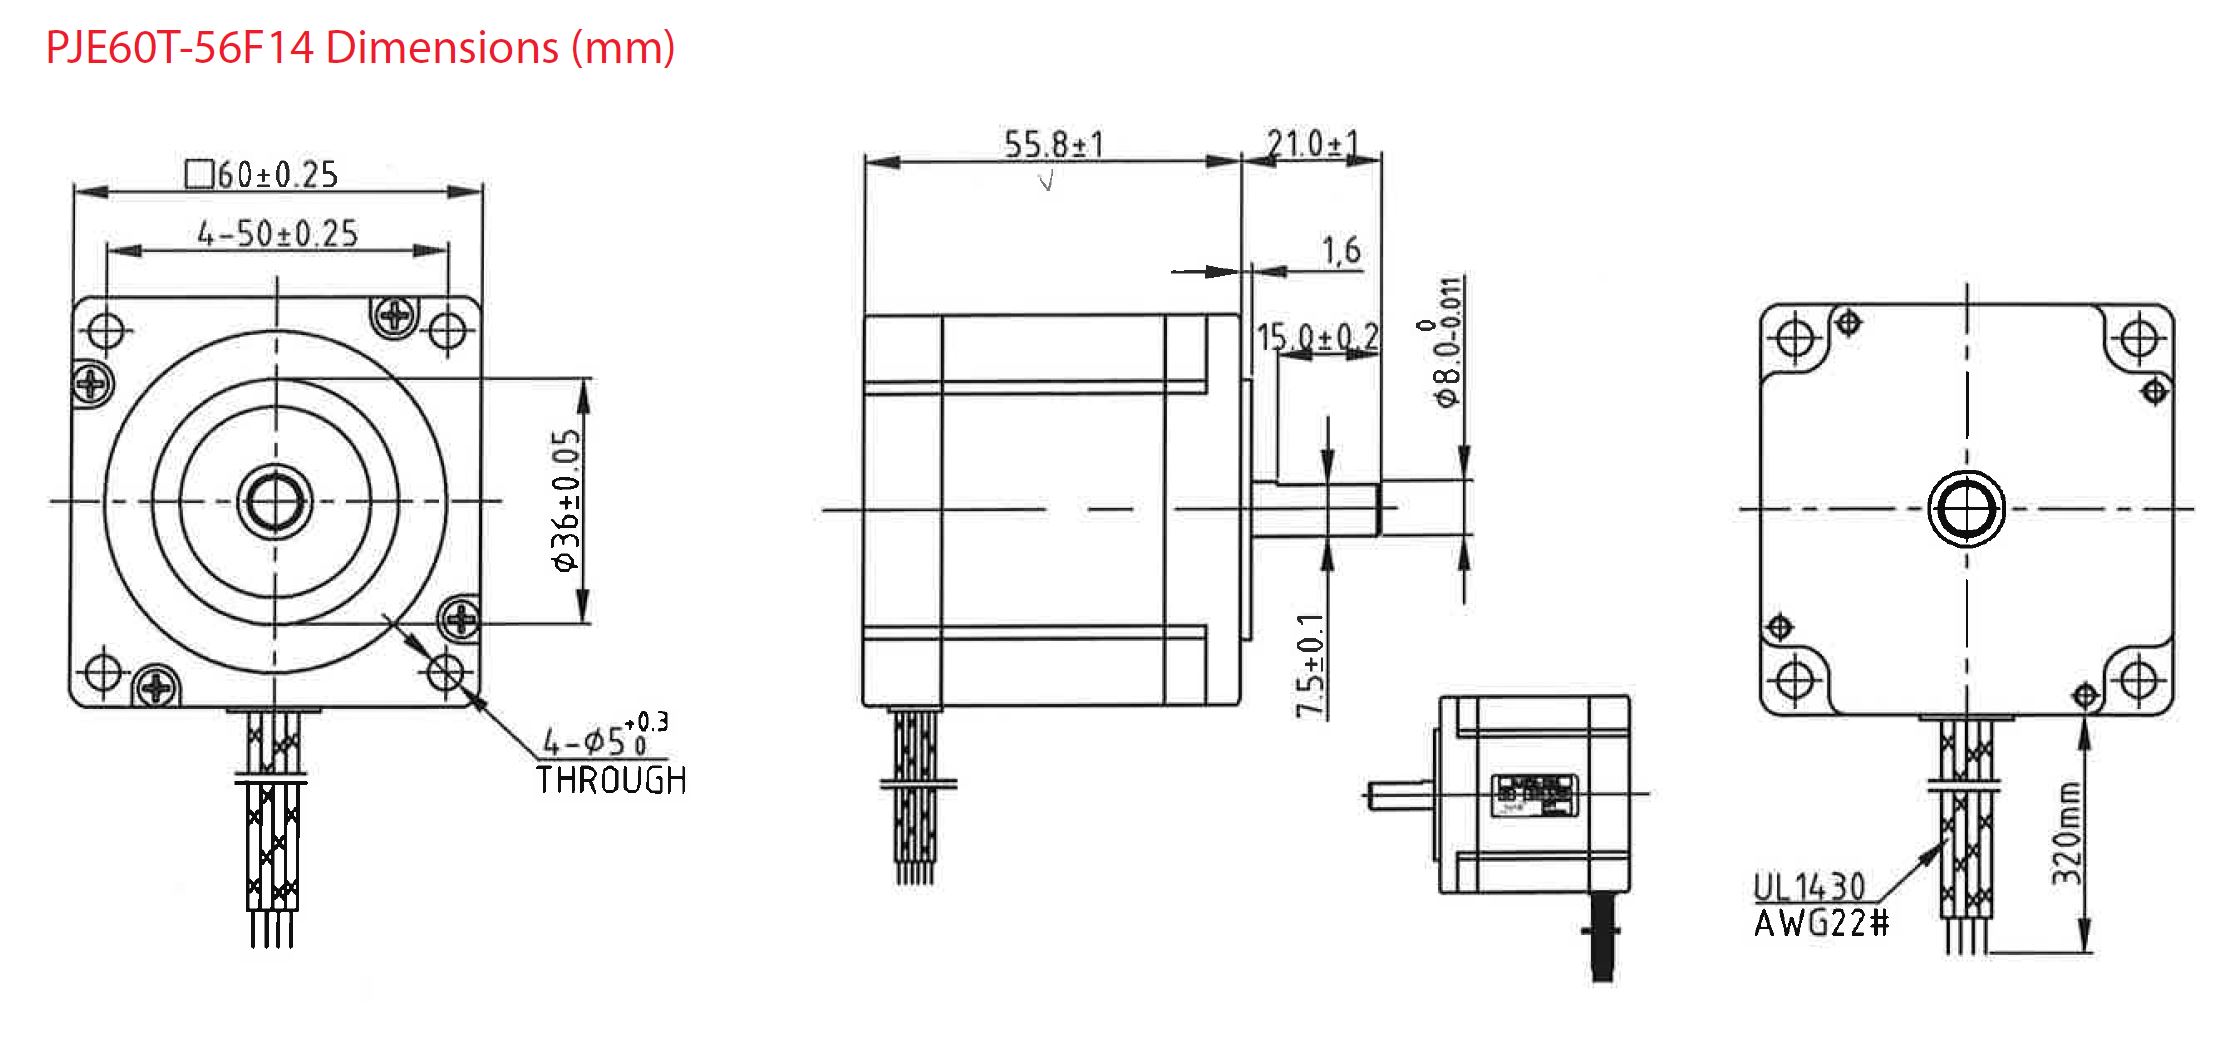 PJE60T-56F14 system drawing